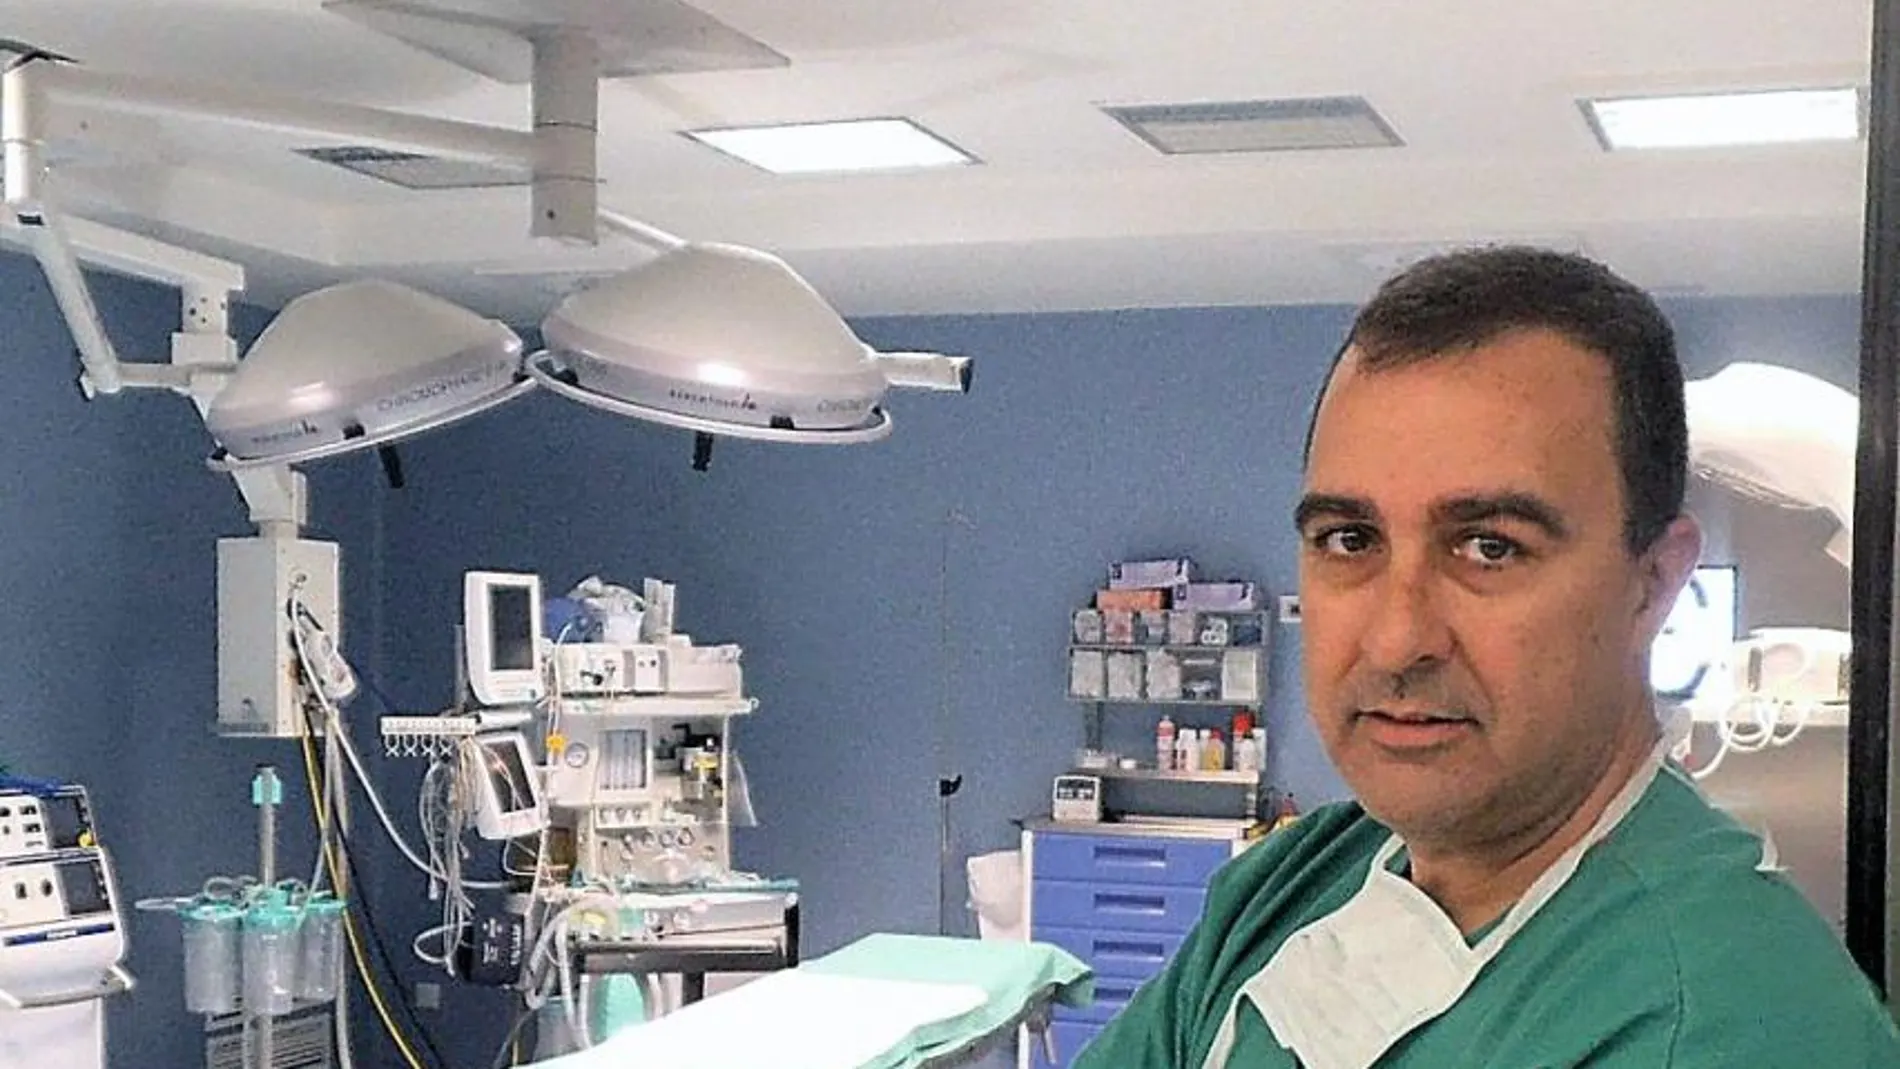 Dr. Miguel Ángel Toledo Romero/ Jefe de Servicio de Cirugía Ortopédica y Traumatología del Hospital Quirónsalud Campo de Gibraltar,  Los Barrios (Cádiz)